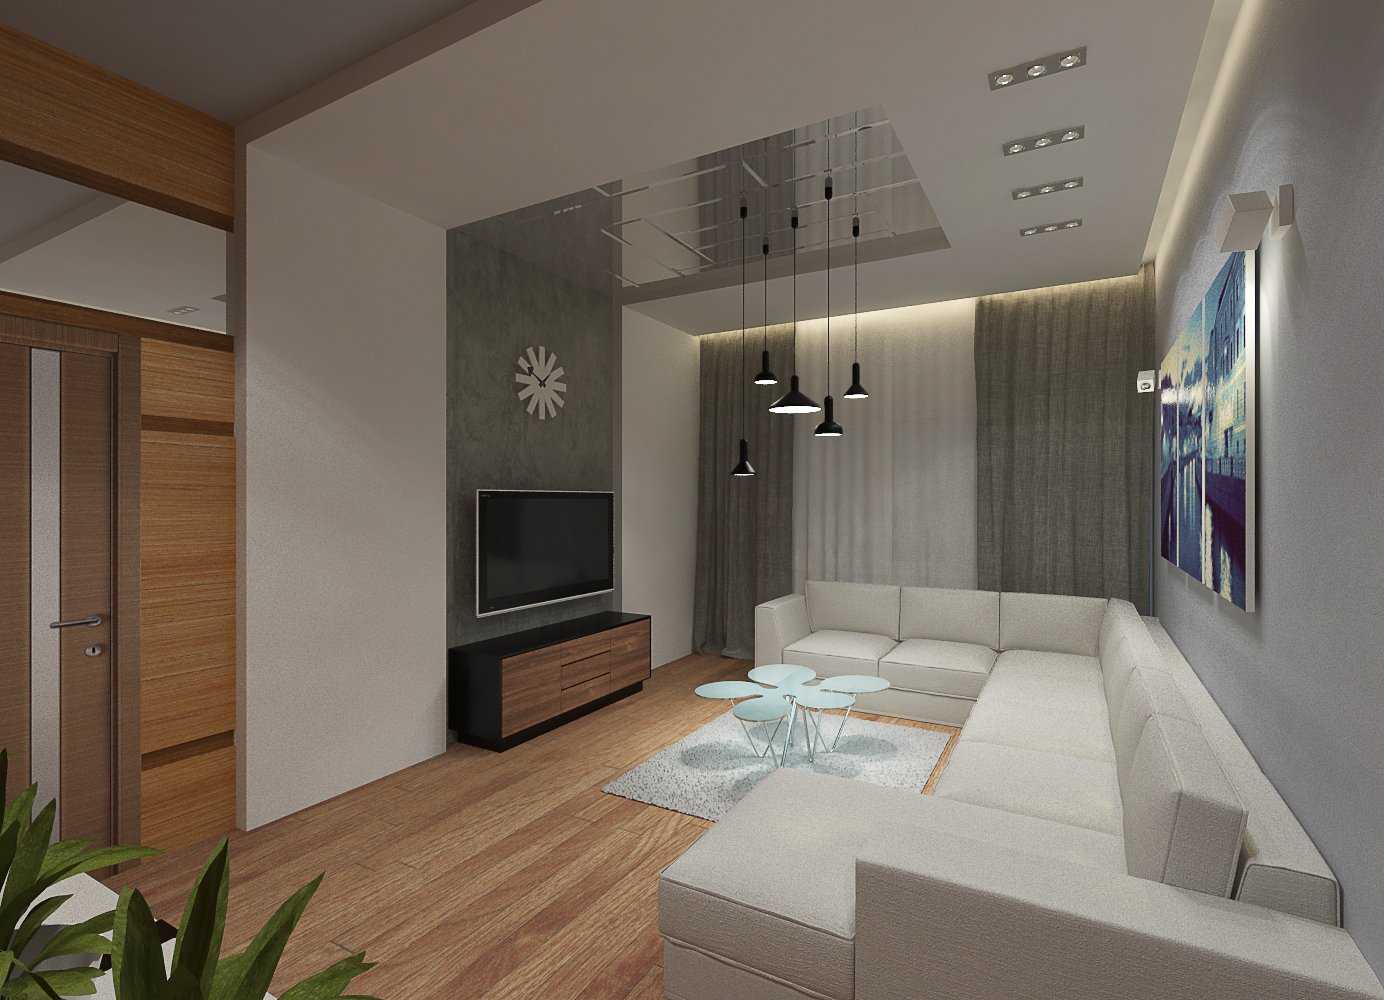 Дизайн 2-х комнатной квартиры площадью 70 кв. метров. фото проекта